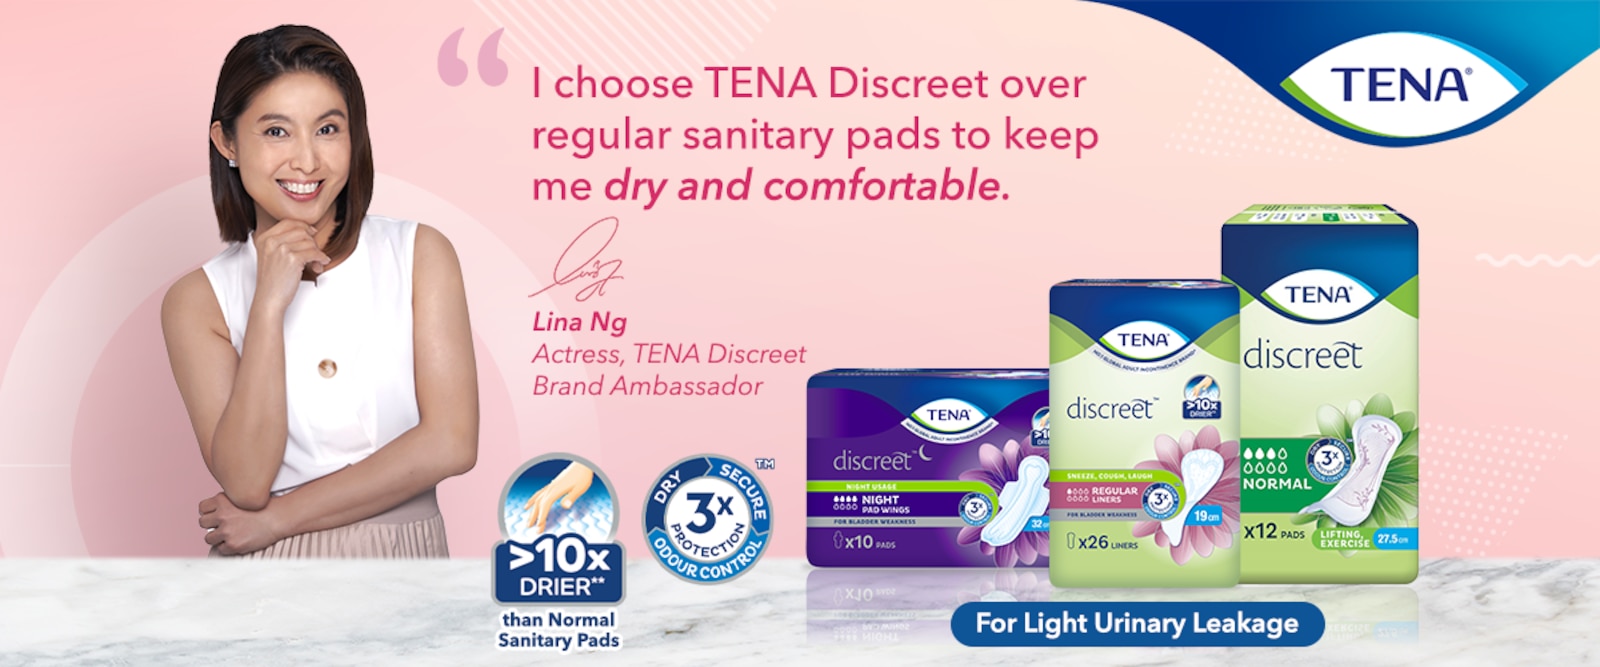 Lina Ng - TENA Discreet Brand Ambassador